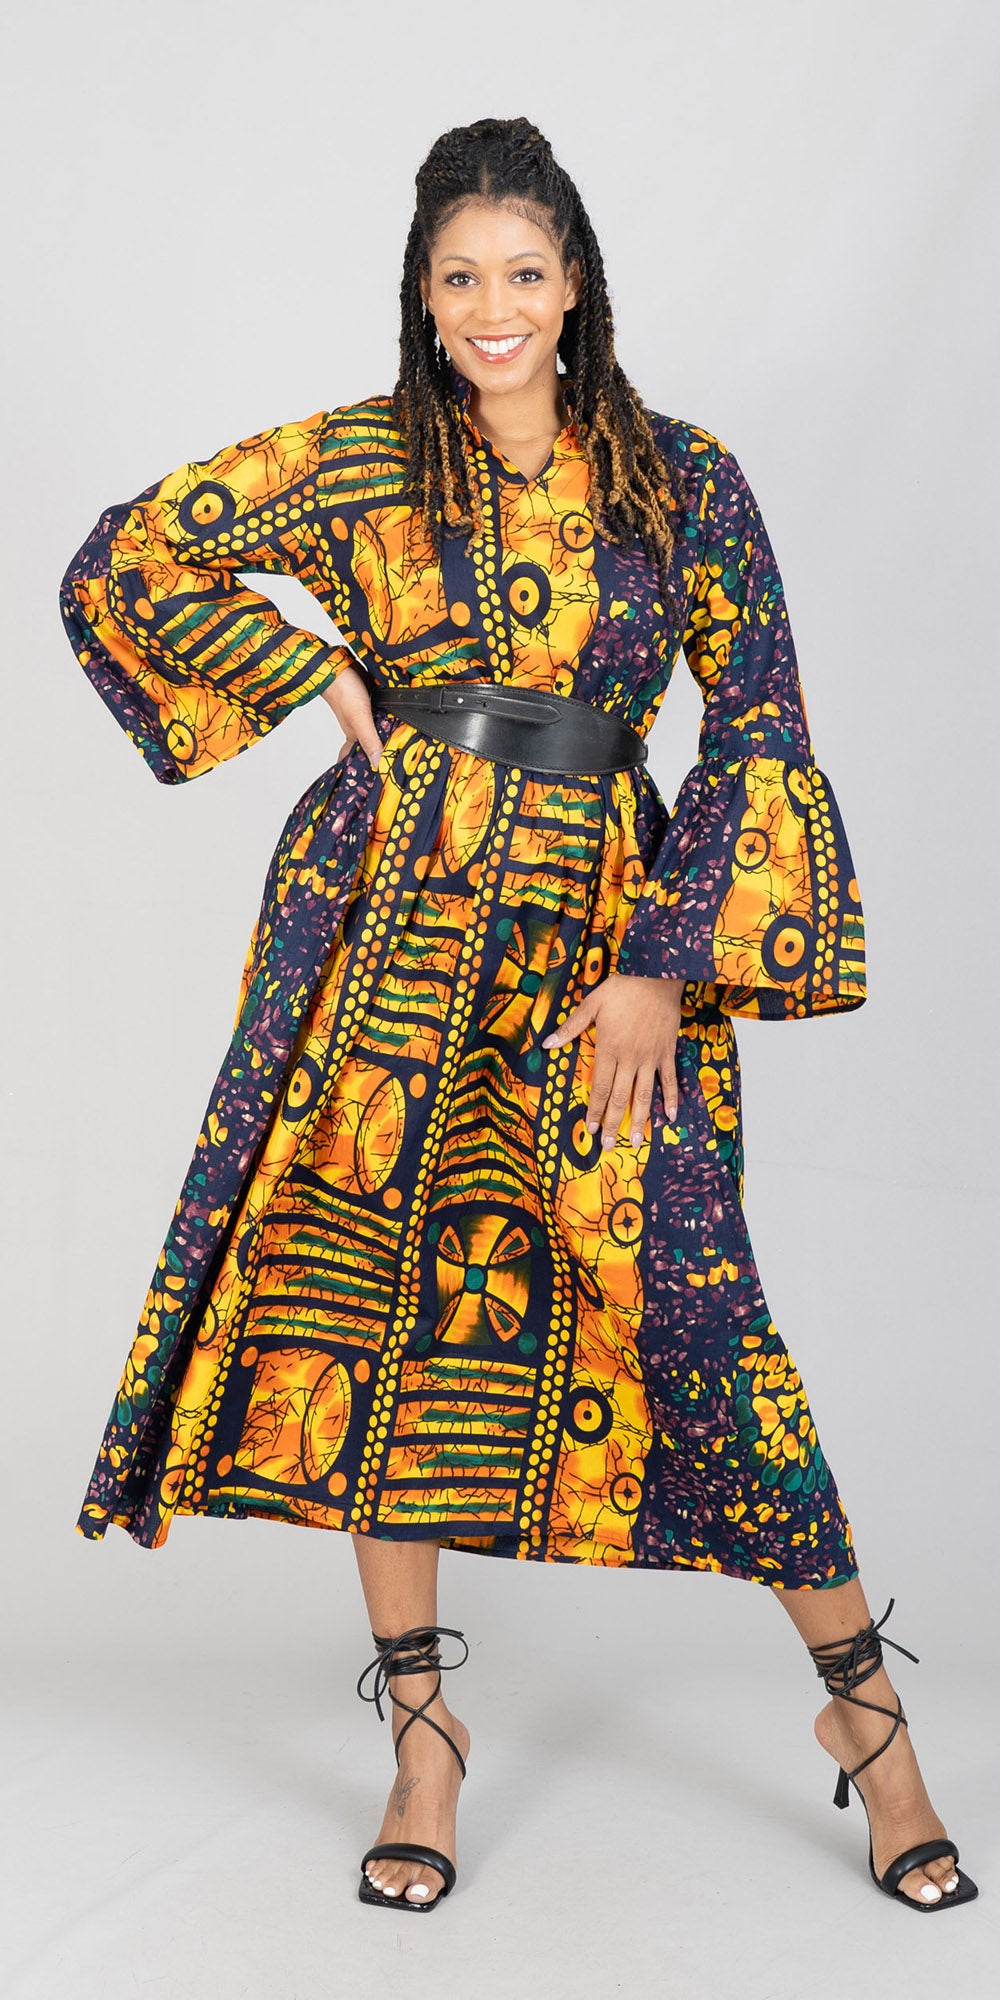 KaraChic 7784-603 - African Print Maxi Dress